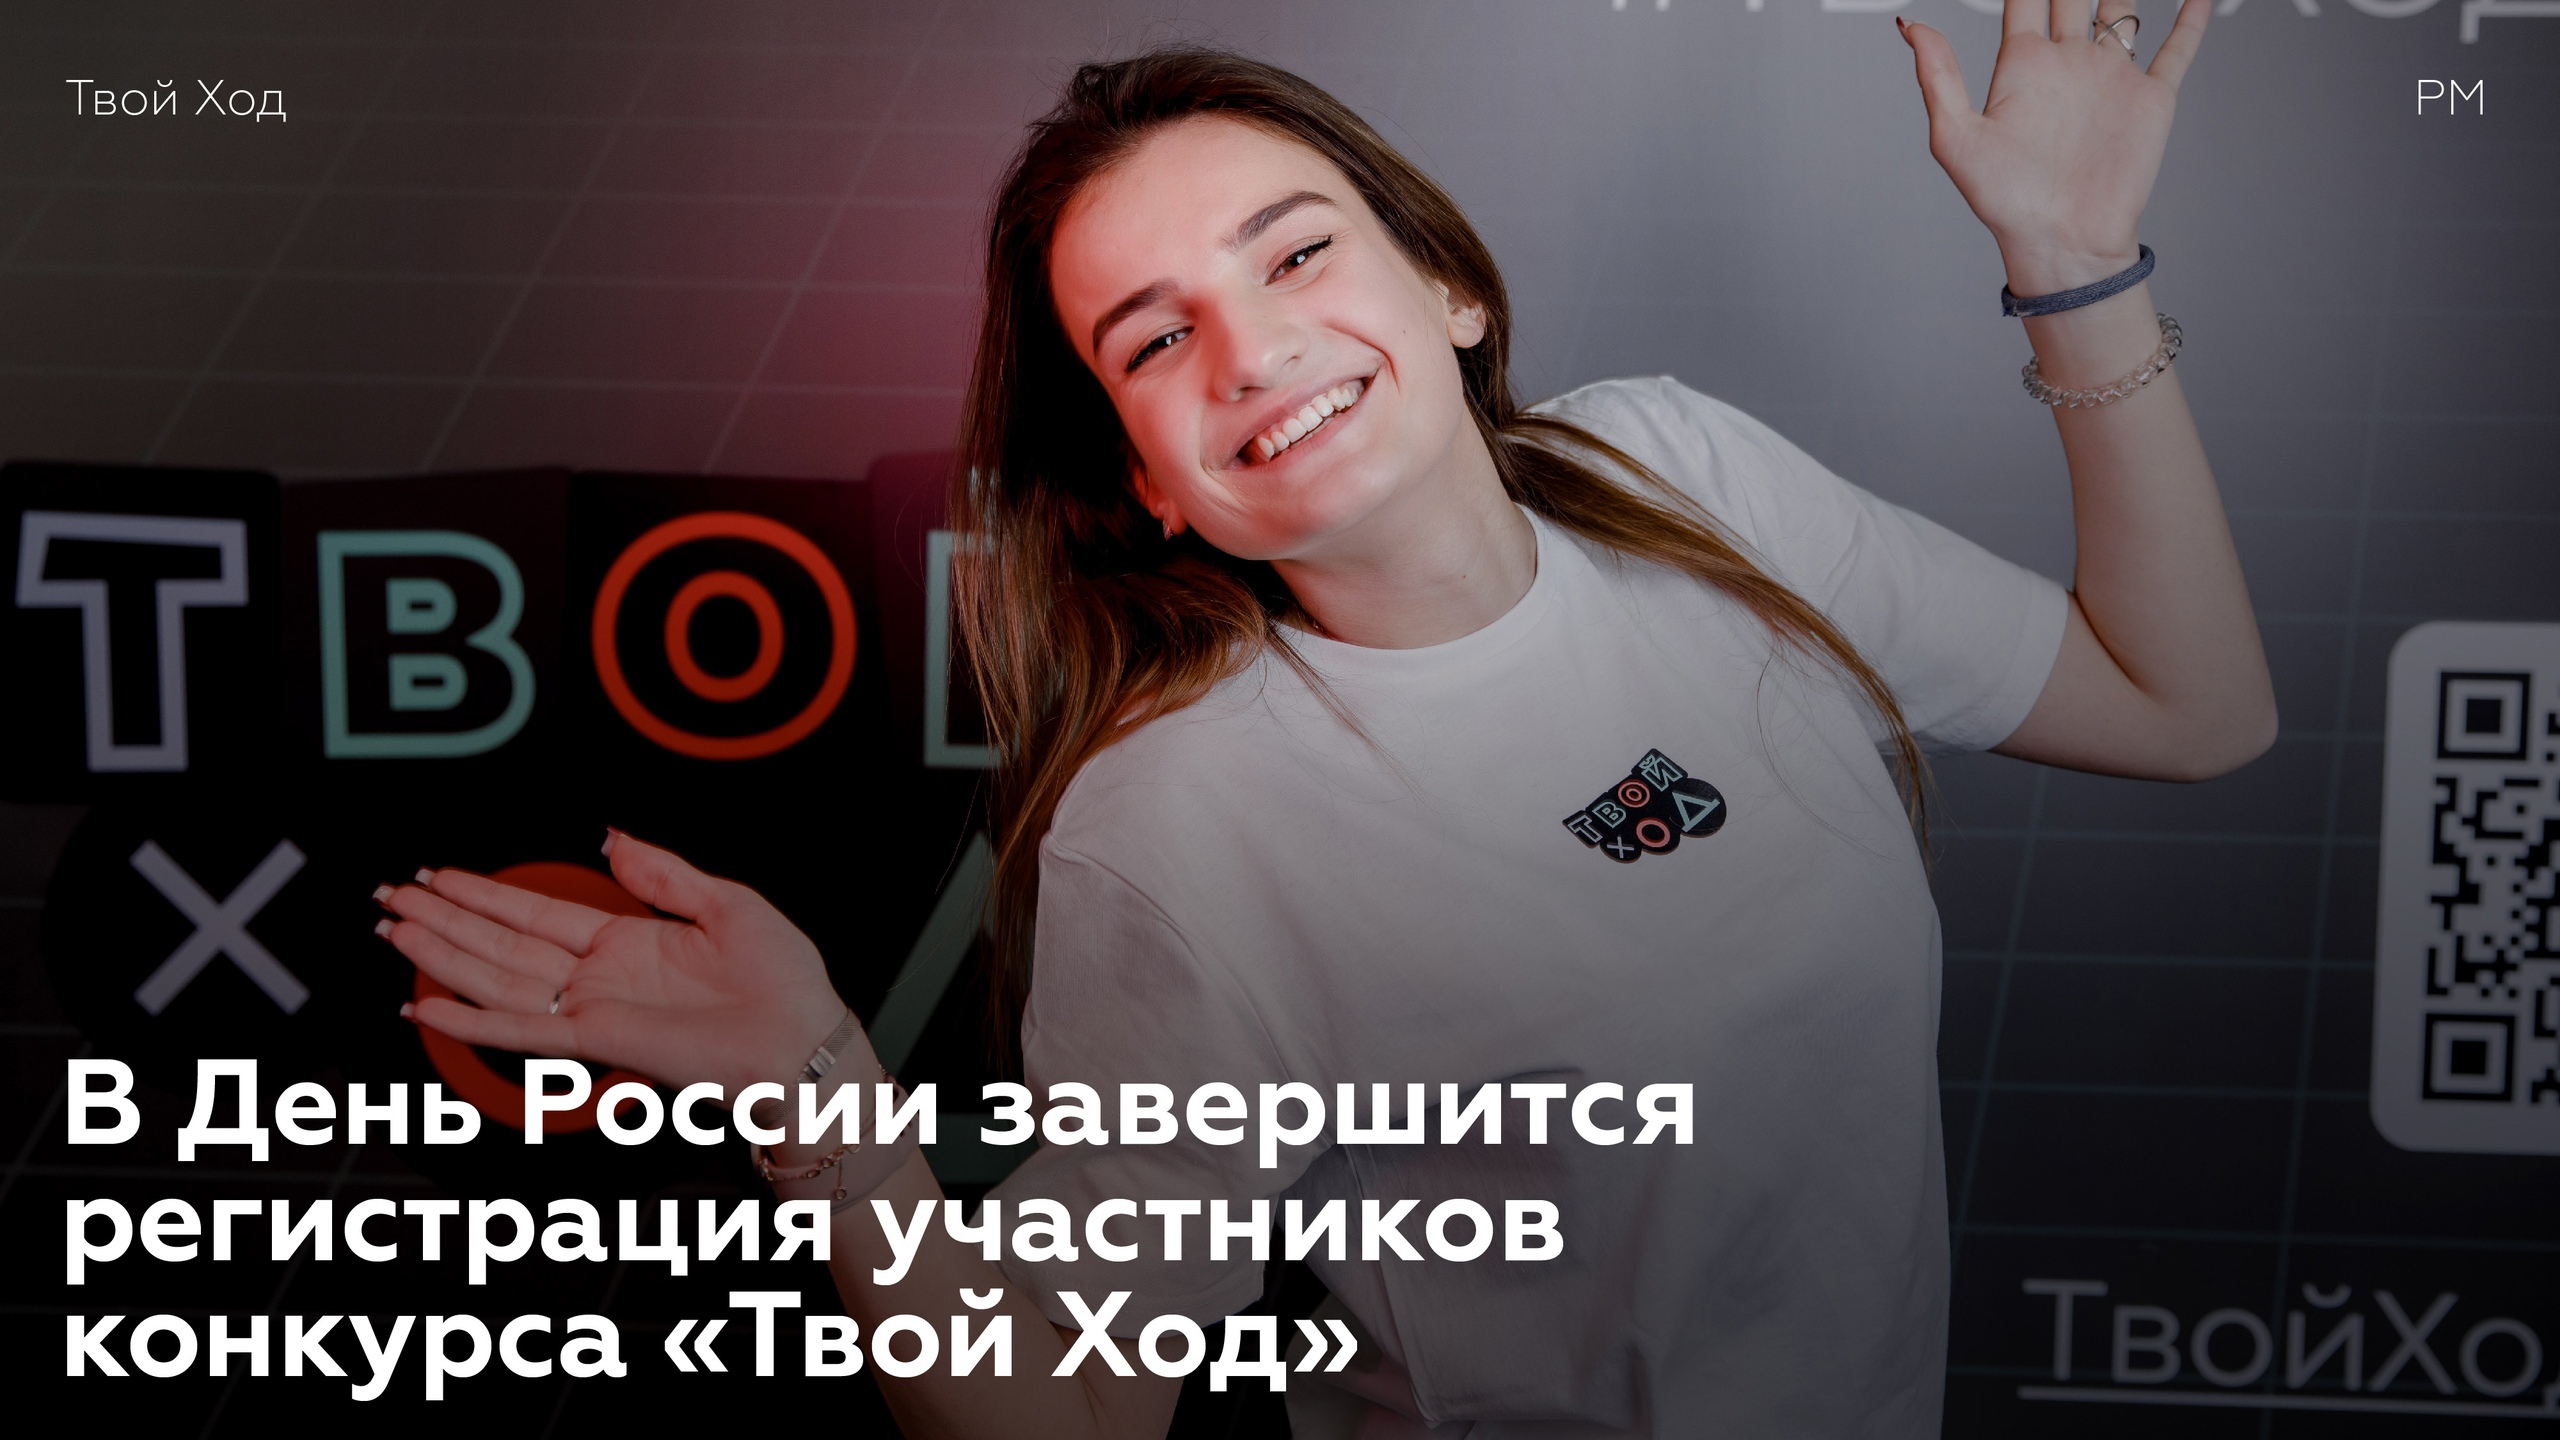 12 июня завершится регистрация участников Всероссийского студенческого конкурса «Твой Ход»